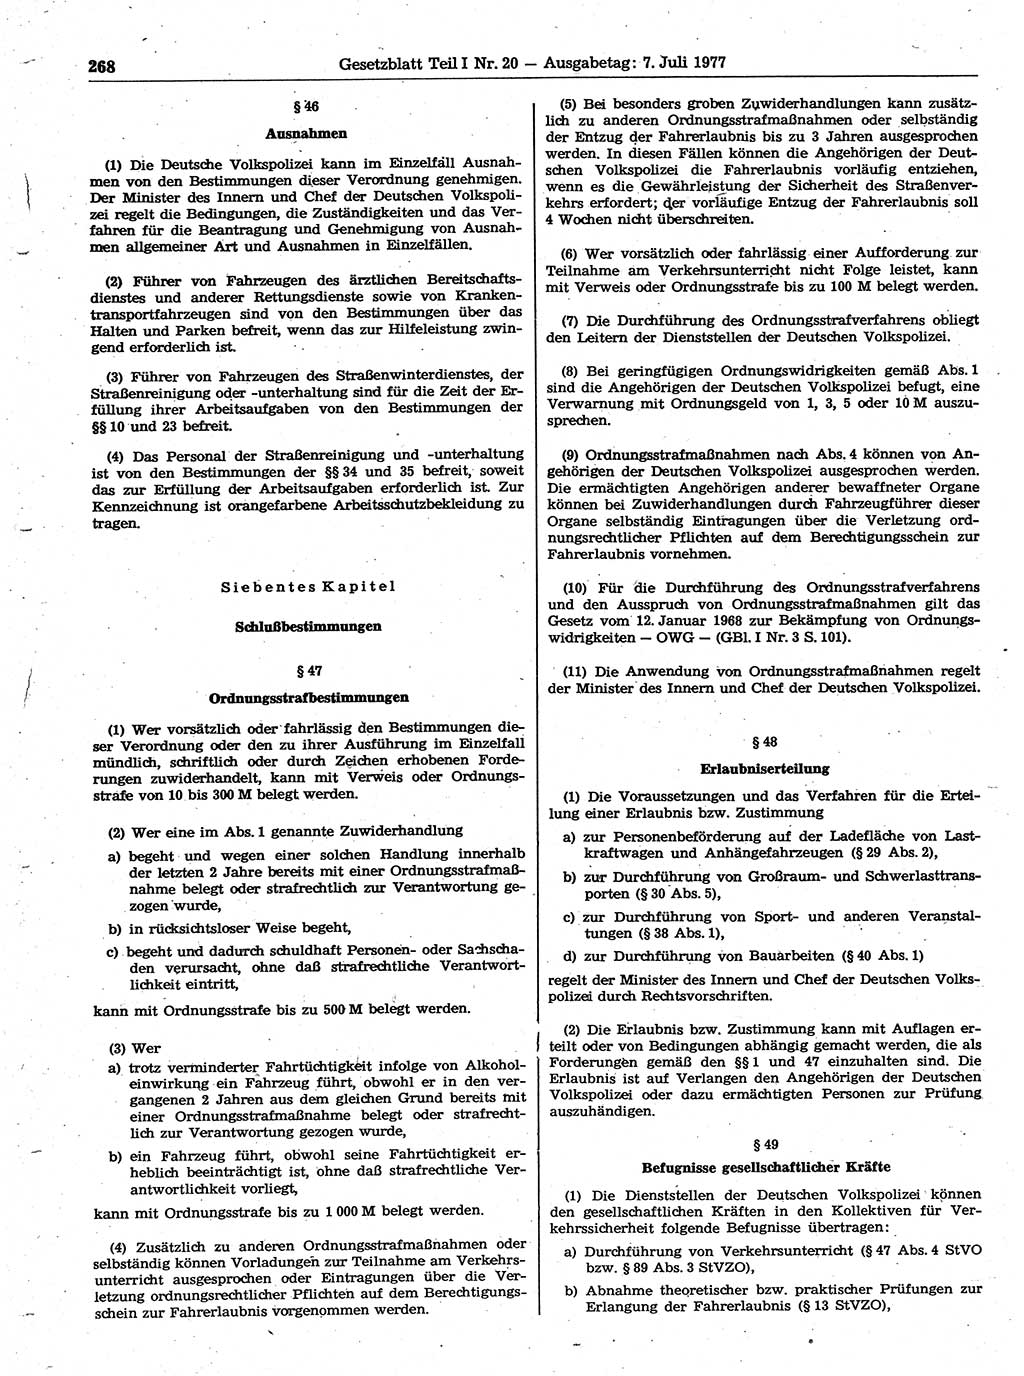 Gesetzblatt (GBl.) der Deutschen Demokratischen Republik (DDR) Teil Ⅰ 1977, Seite 268 (GBl. DDR Ⅰ 1977, S. 268)